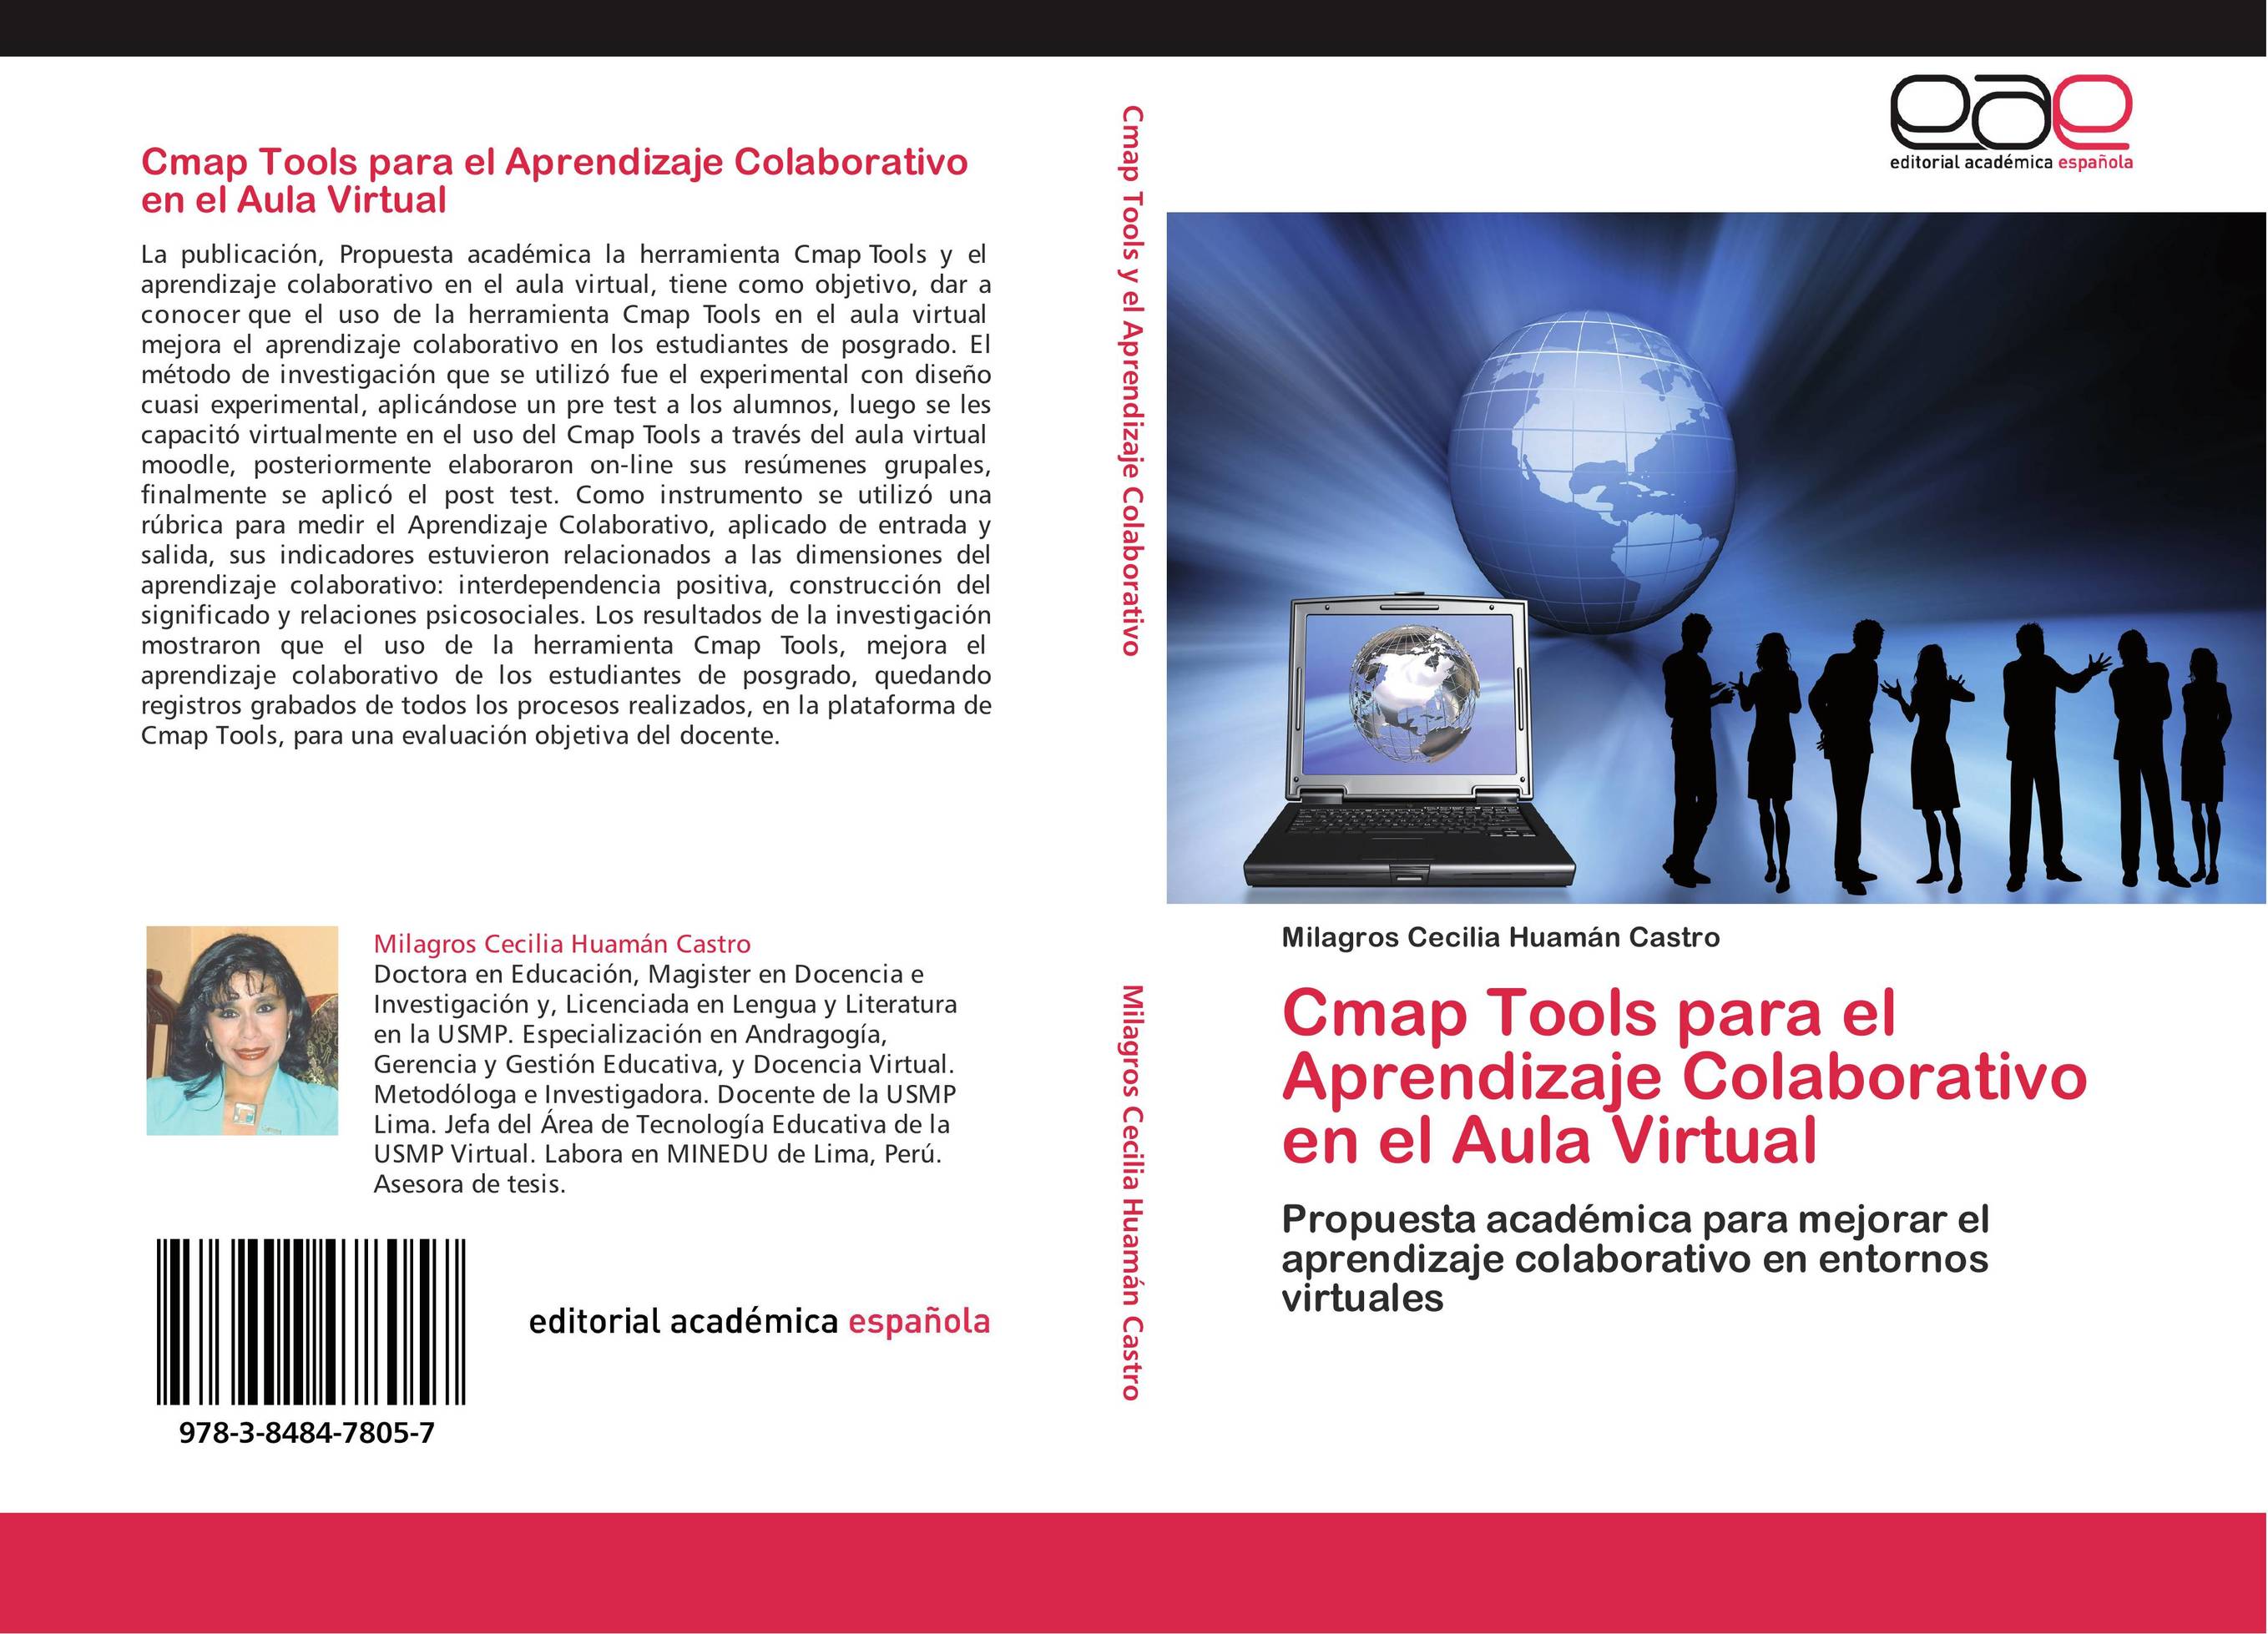 Cmap Tools para el Aprendizaje Colaborativo en el Aula Virtual